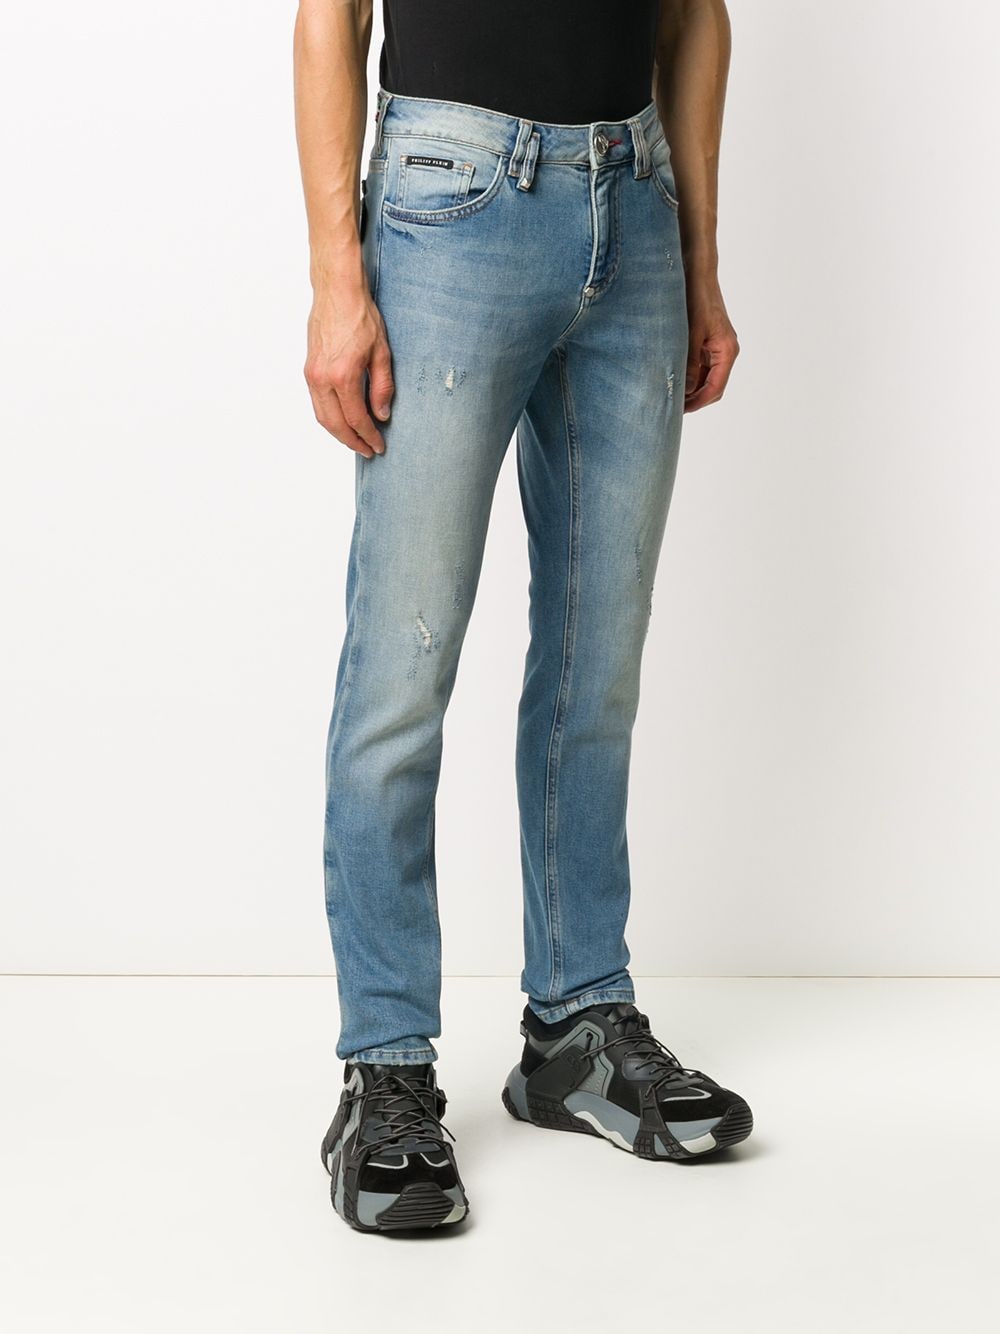 фото Philipp plein джинсы кроя слим с эффектом потертости